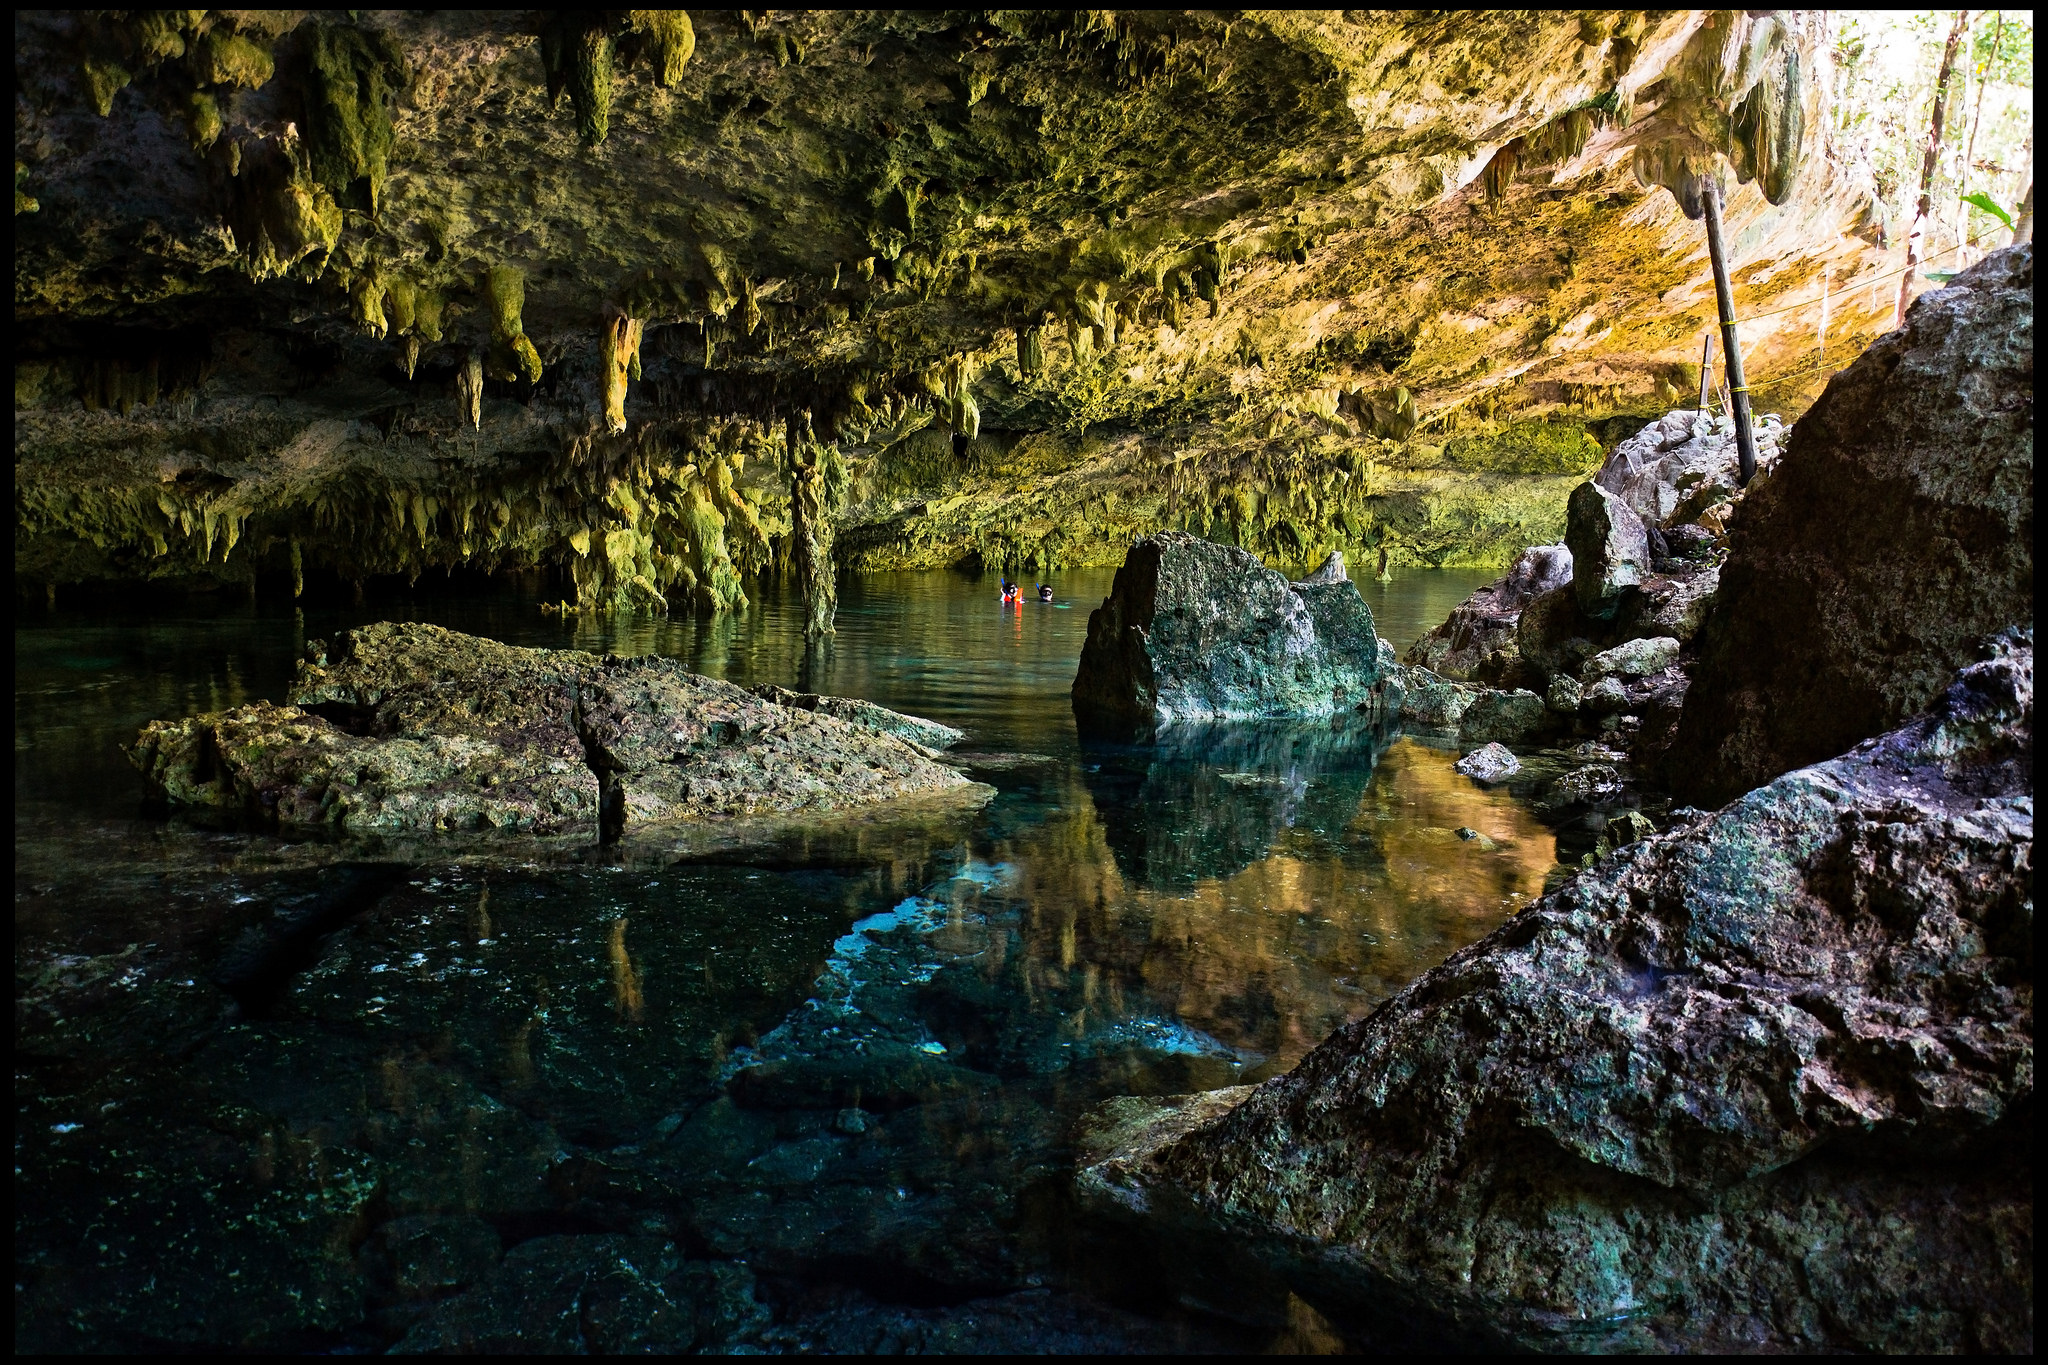  Resguardan cenotes y cuevas de la Riviera Maya enigmas prehistóricos